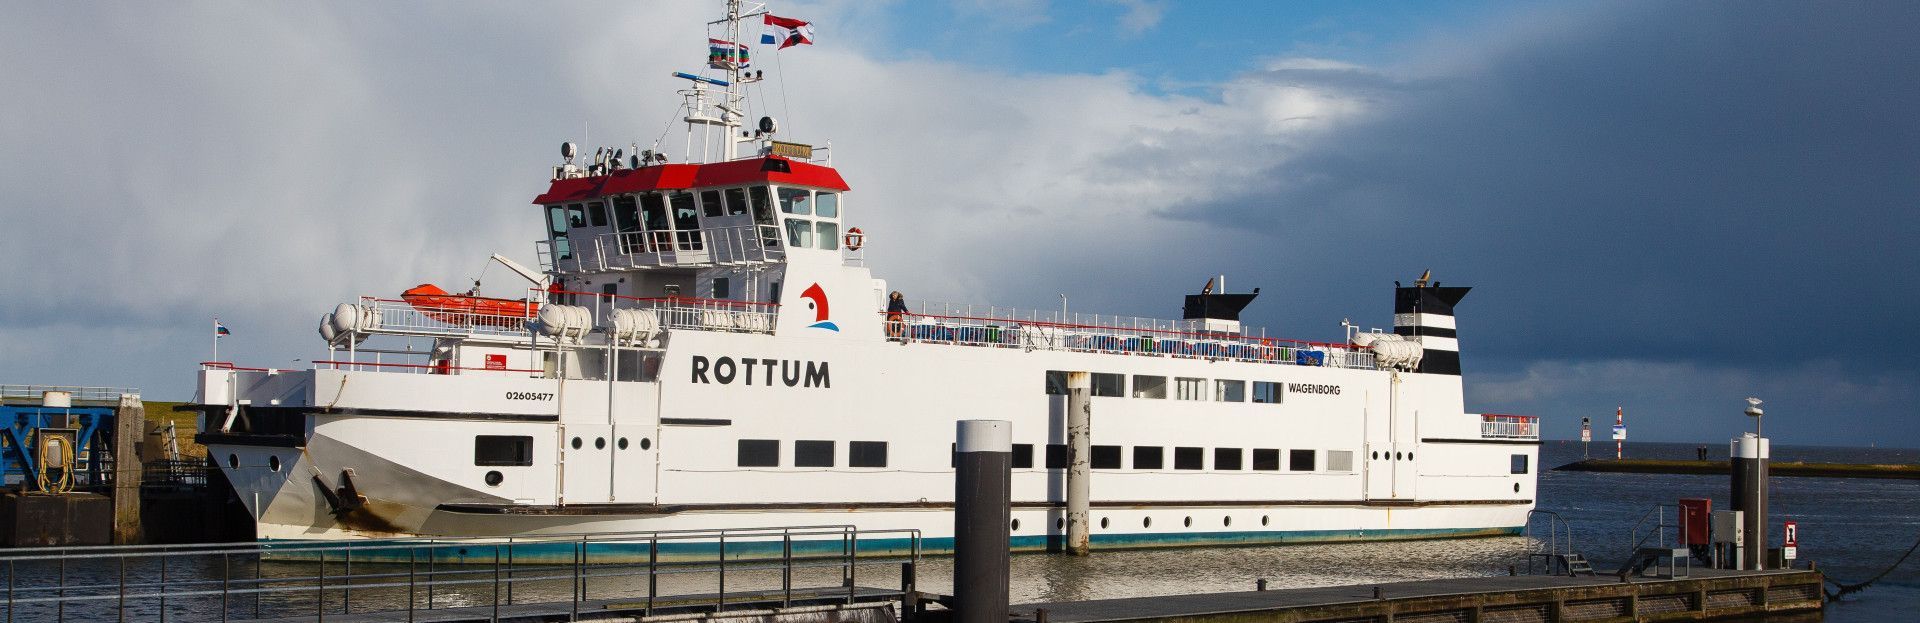 de MS Rottum in de veerhaven van Lauwersoog